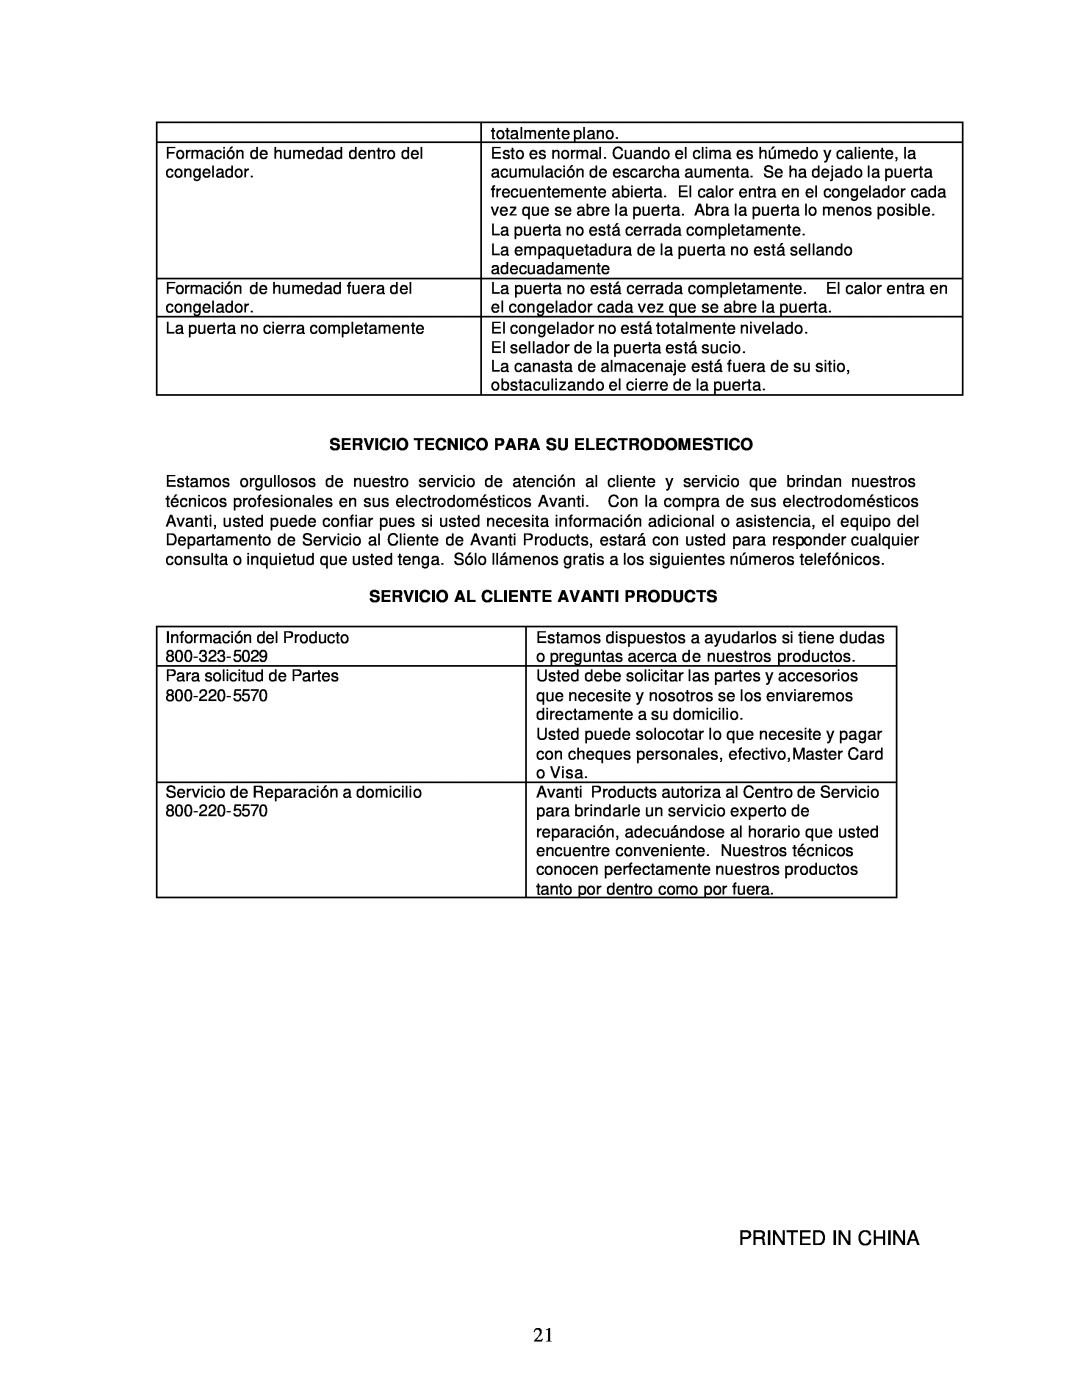 Avanti CF142, CF97, CF199 instruction manual Servicio Tecnico Para Su Electrodomestico, Servicio Al Cliente Avanti Products 